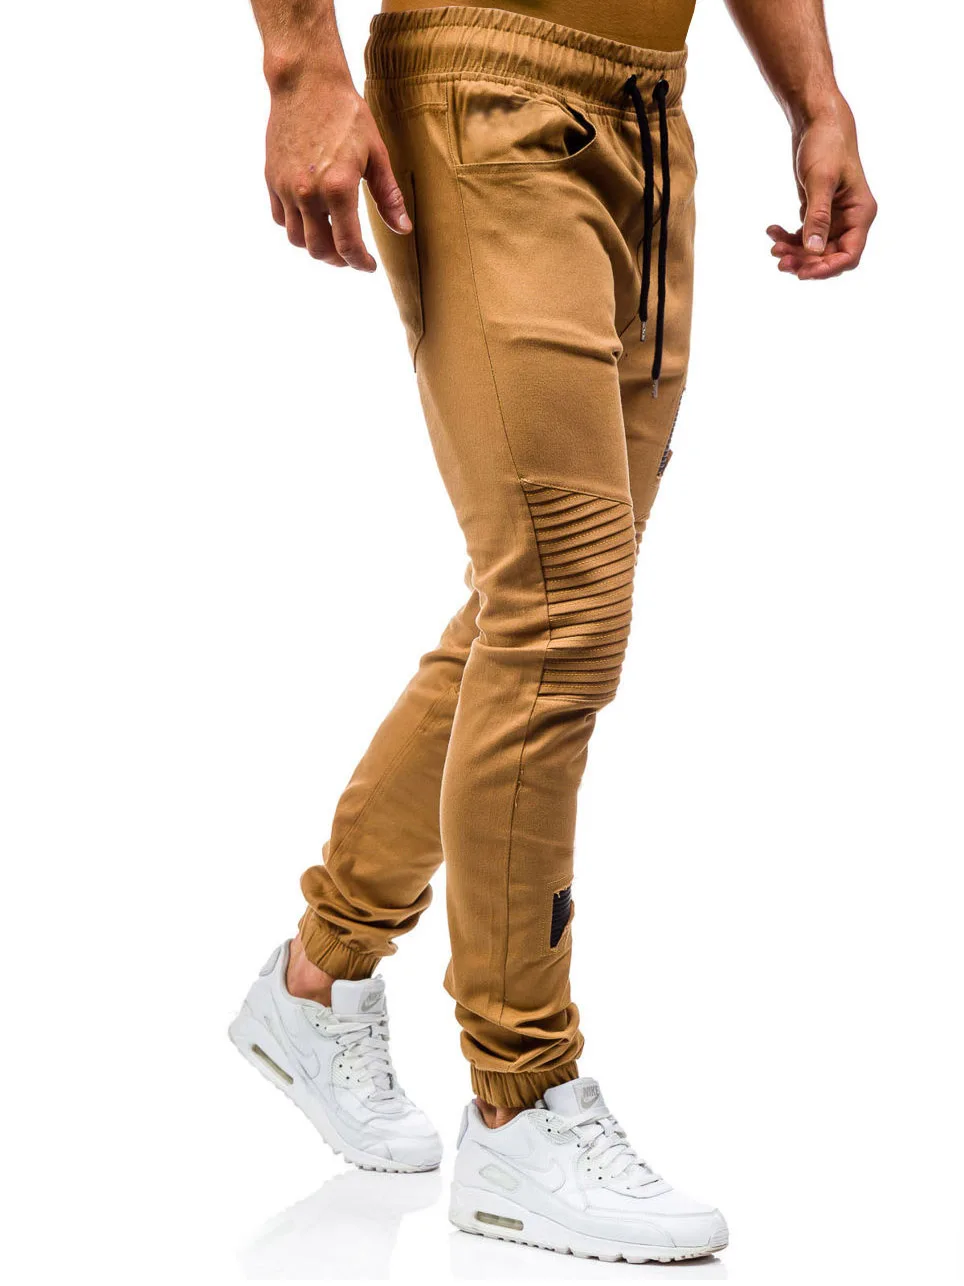 Мужские штаны новые нашивки военные хип-хоп шаровары, штаны для бега, штаны для мужчин s джоггеры штаны со складками хип-хоп спортивные штаны XXXL